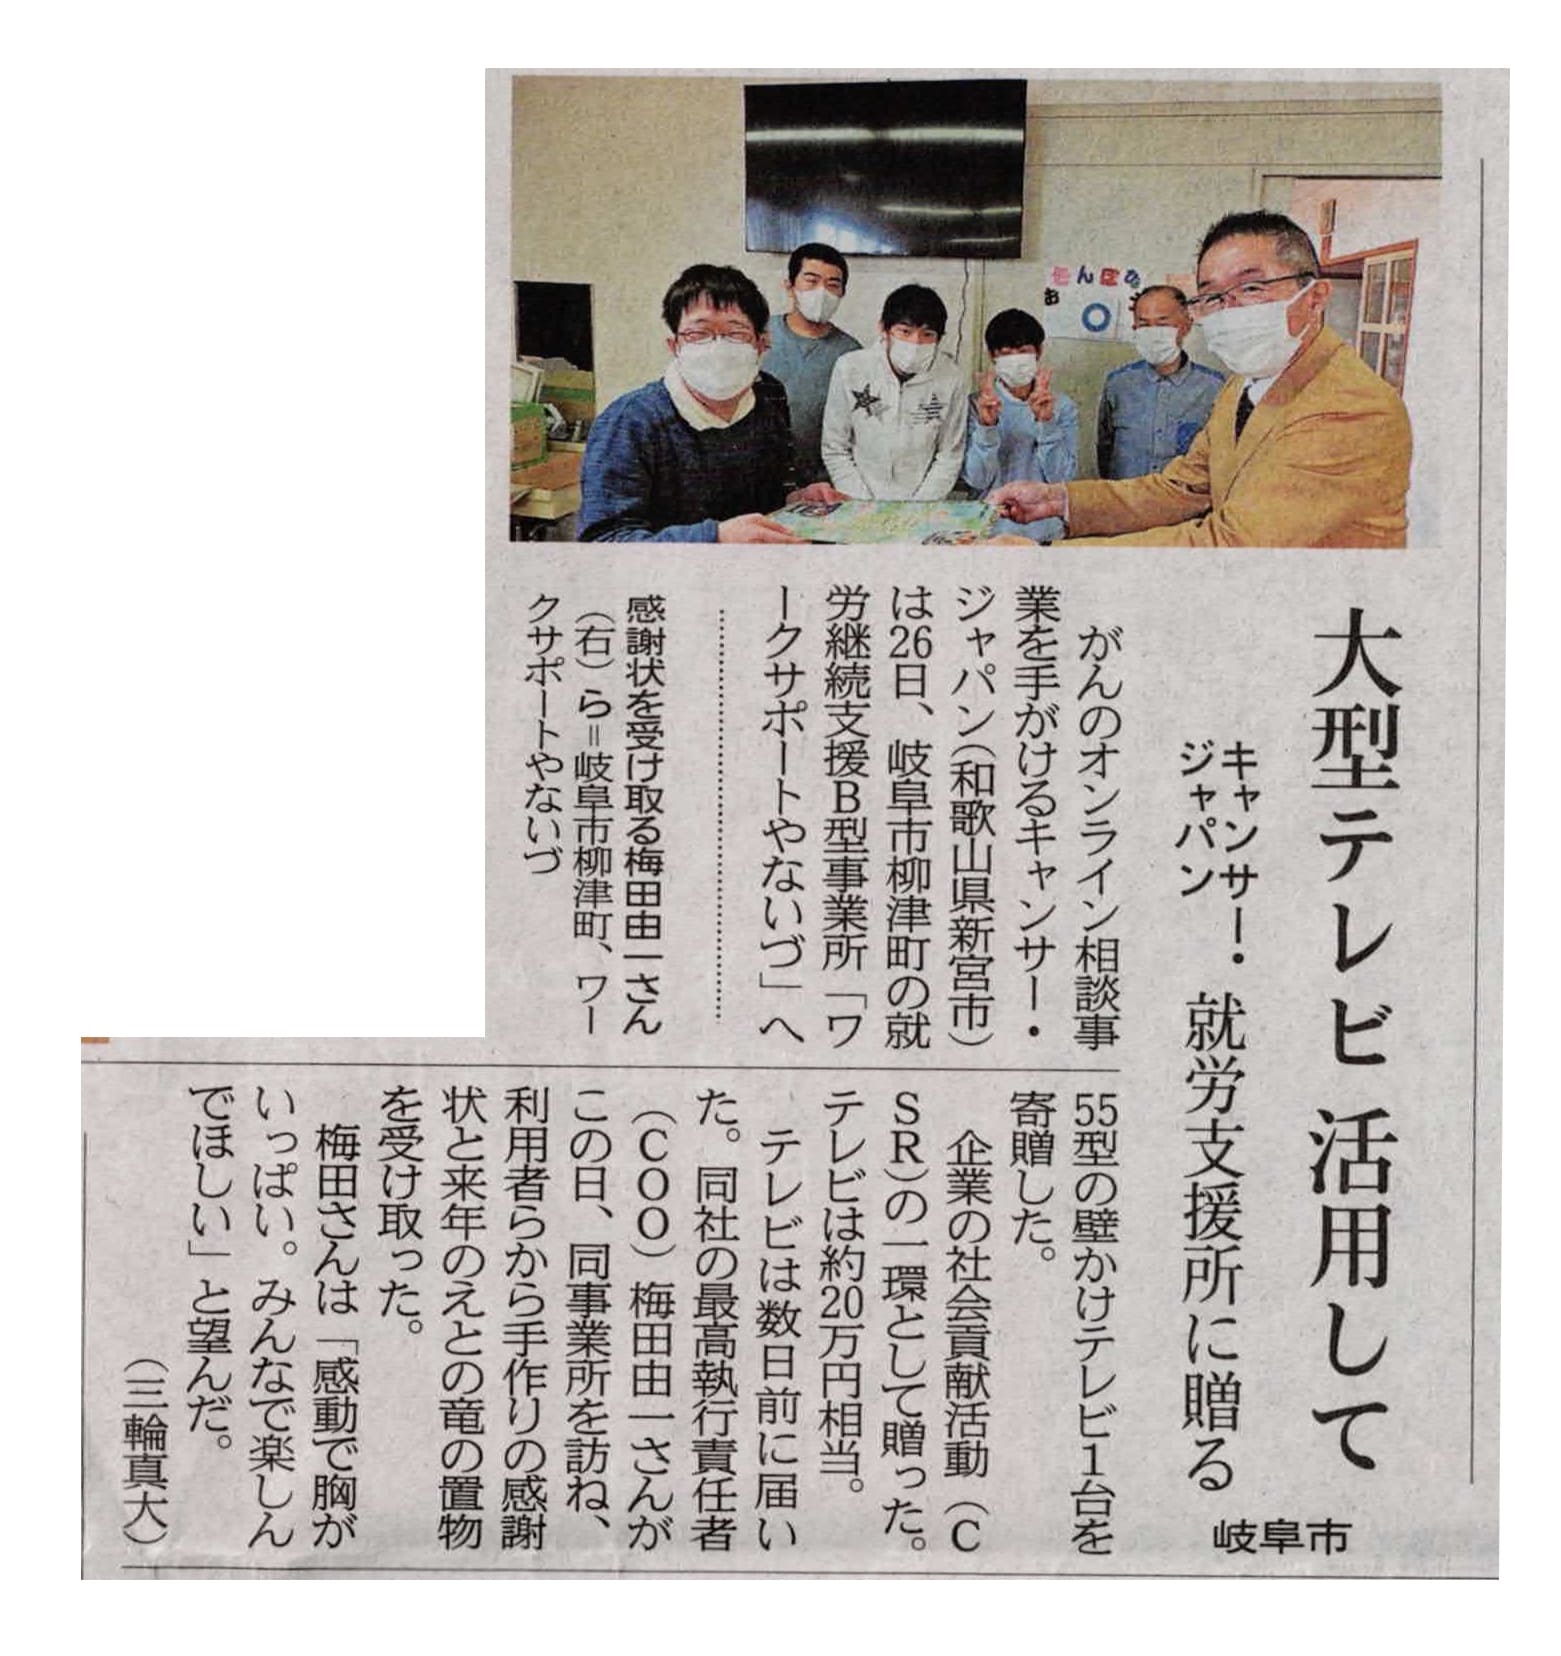 テレビ寄贈,CSR,岐阜新聞に掲載されました。